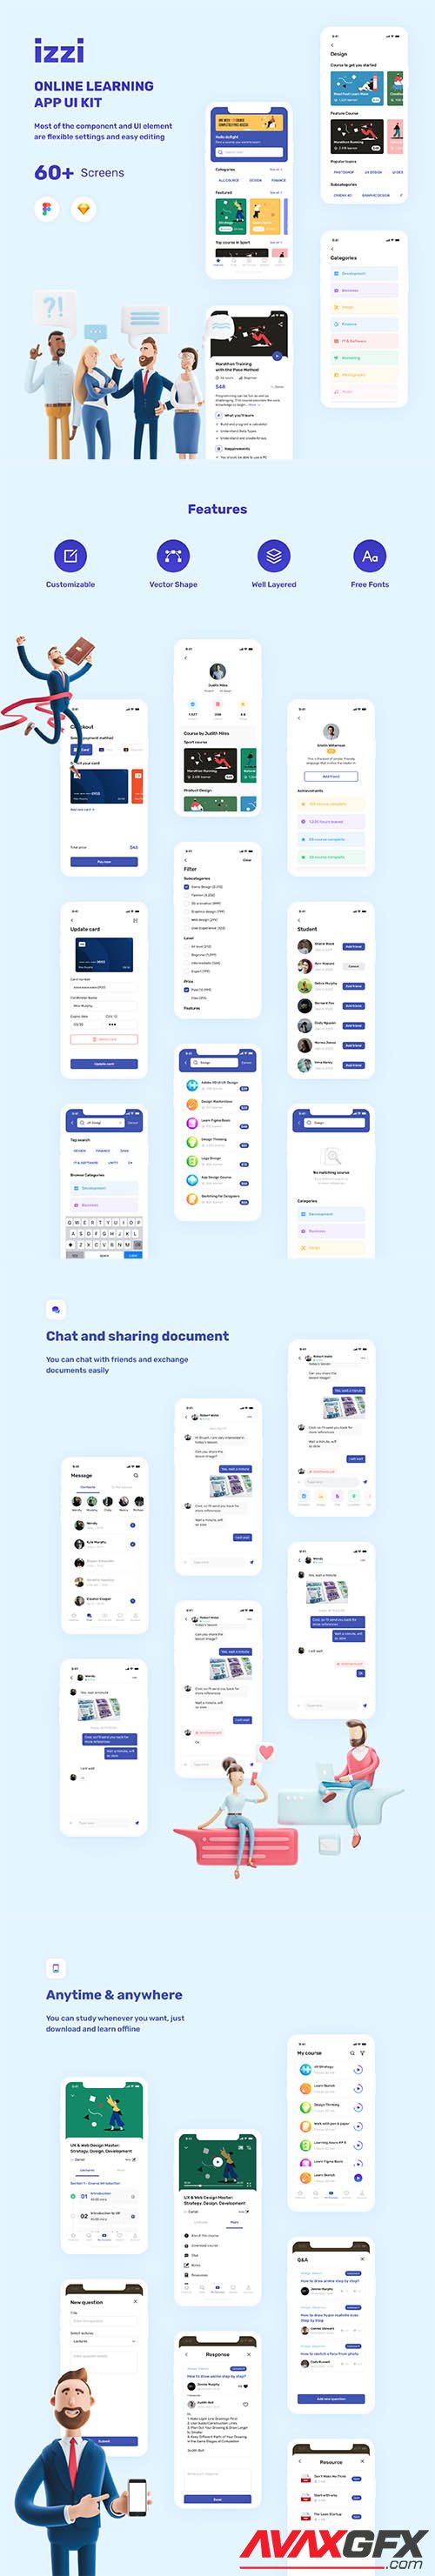 izzi - Online Learning App UI Kit